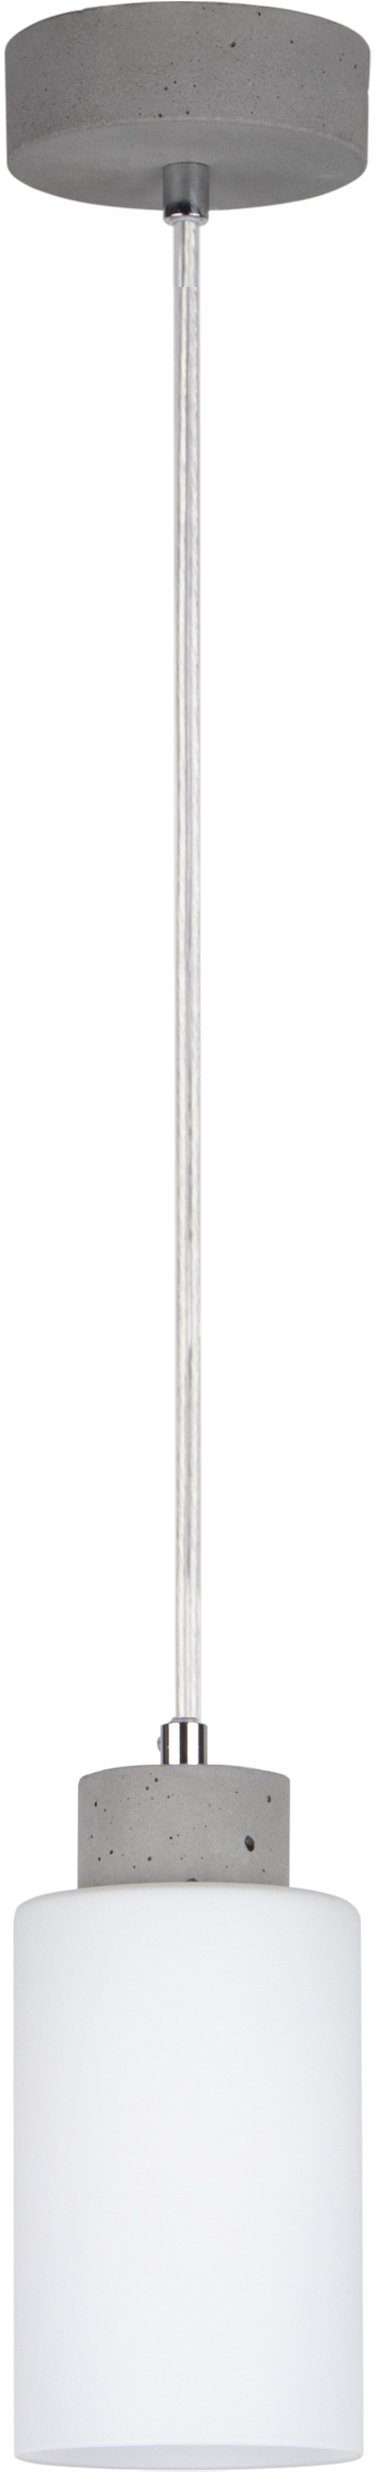 spot light hanglamp karla hanglamp, lampenkap van hoogwaardig glas, betonelementen (1 stuk) grijs